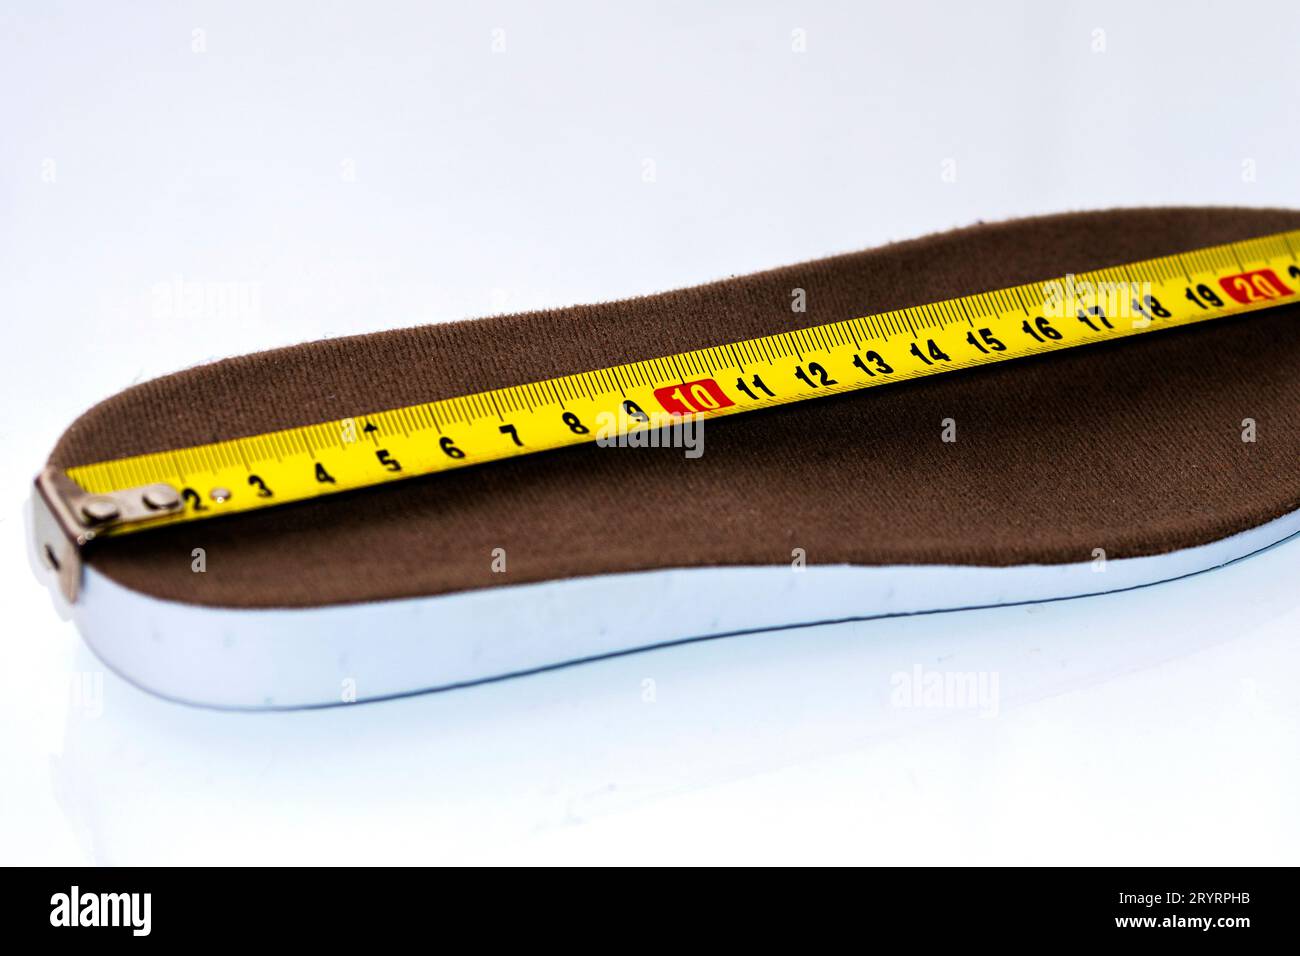 Messung der Schuhgröße. Maßband messen Einlegesohlen messen. Größenkonzept. Nahaufnahme. Stockfoto